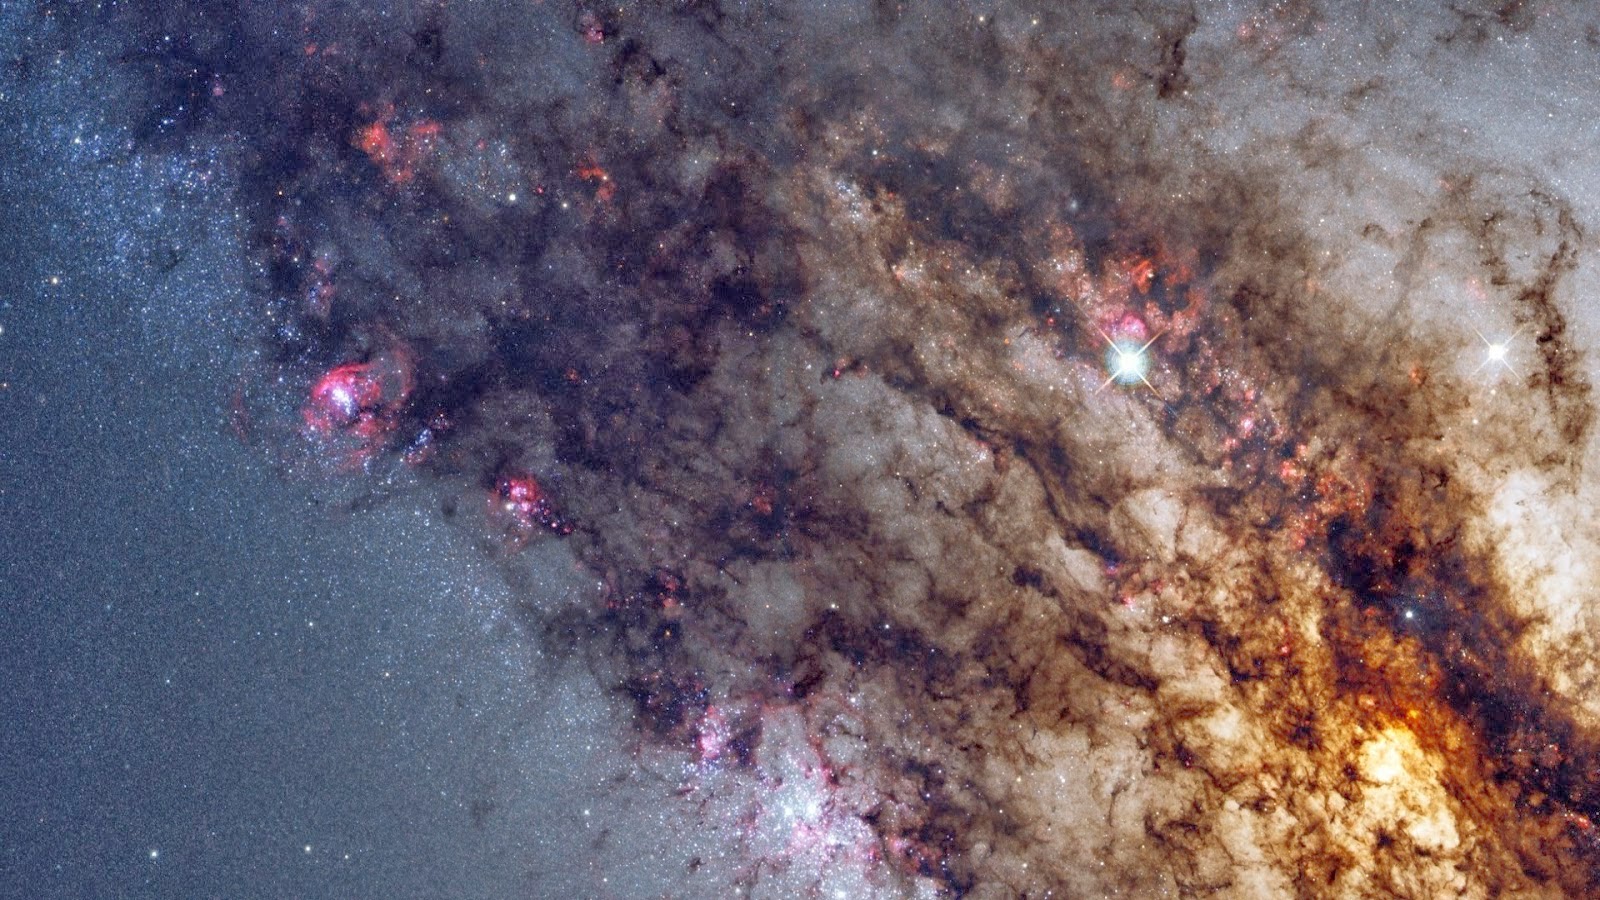 HD Wallpaper 1080p Space Milky Way Galaxy